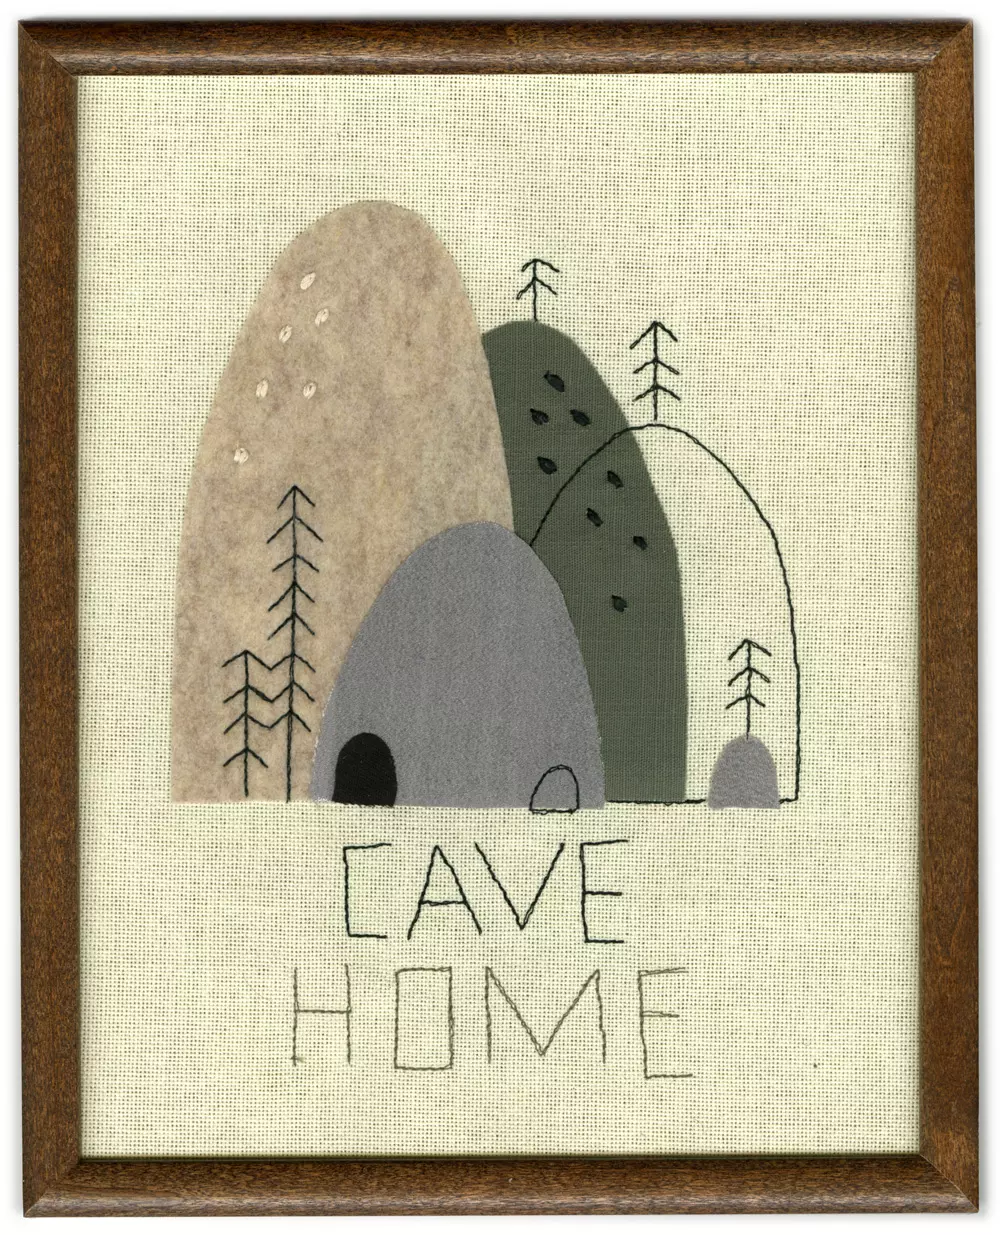 Cave Home, Jon Klassen and Mrs. Karen Klassen